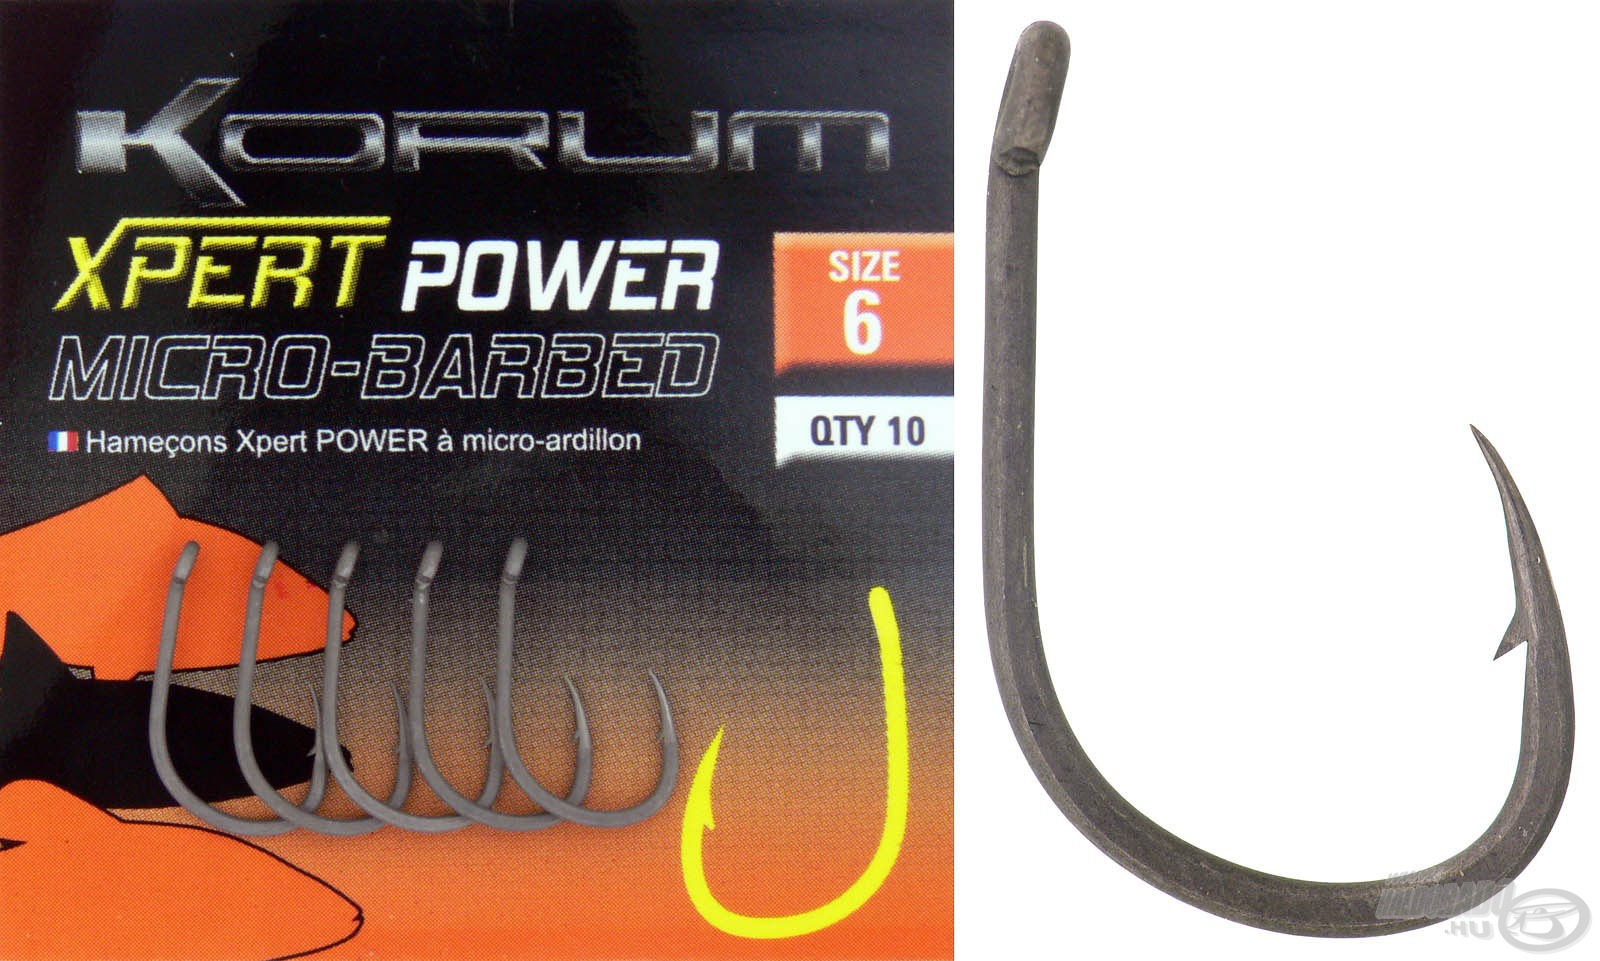 KORUM Xpert Power Micro Barbed 12 - Haldorádó horgász áruház